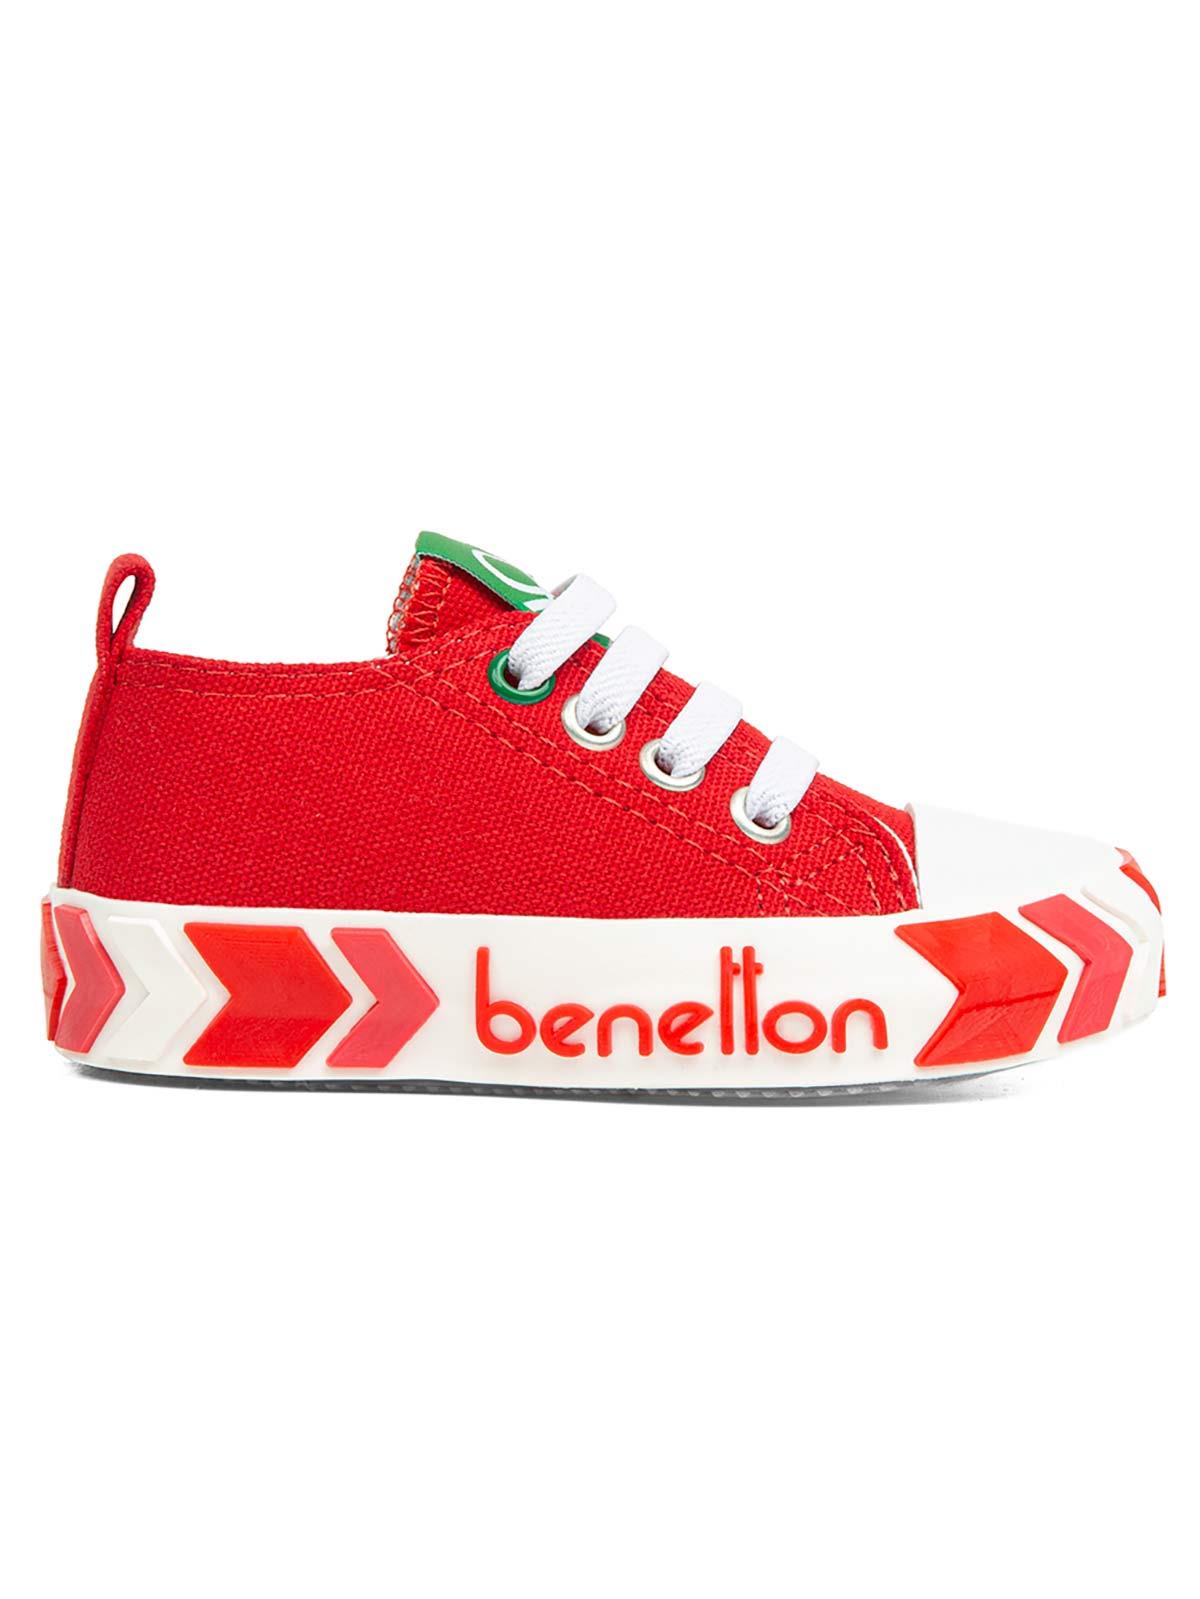 Benetton Erkek Çocuk Spor Ayakkabı 21-25 Numara Kırmızı